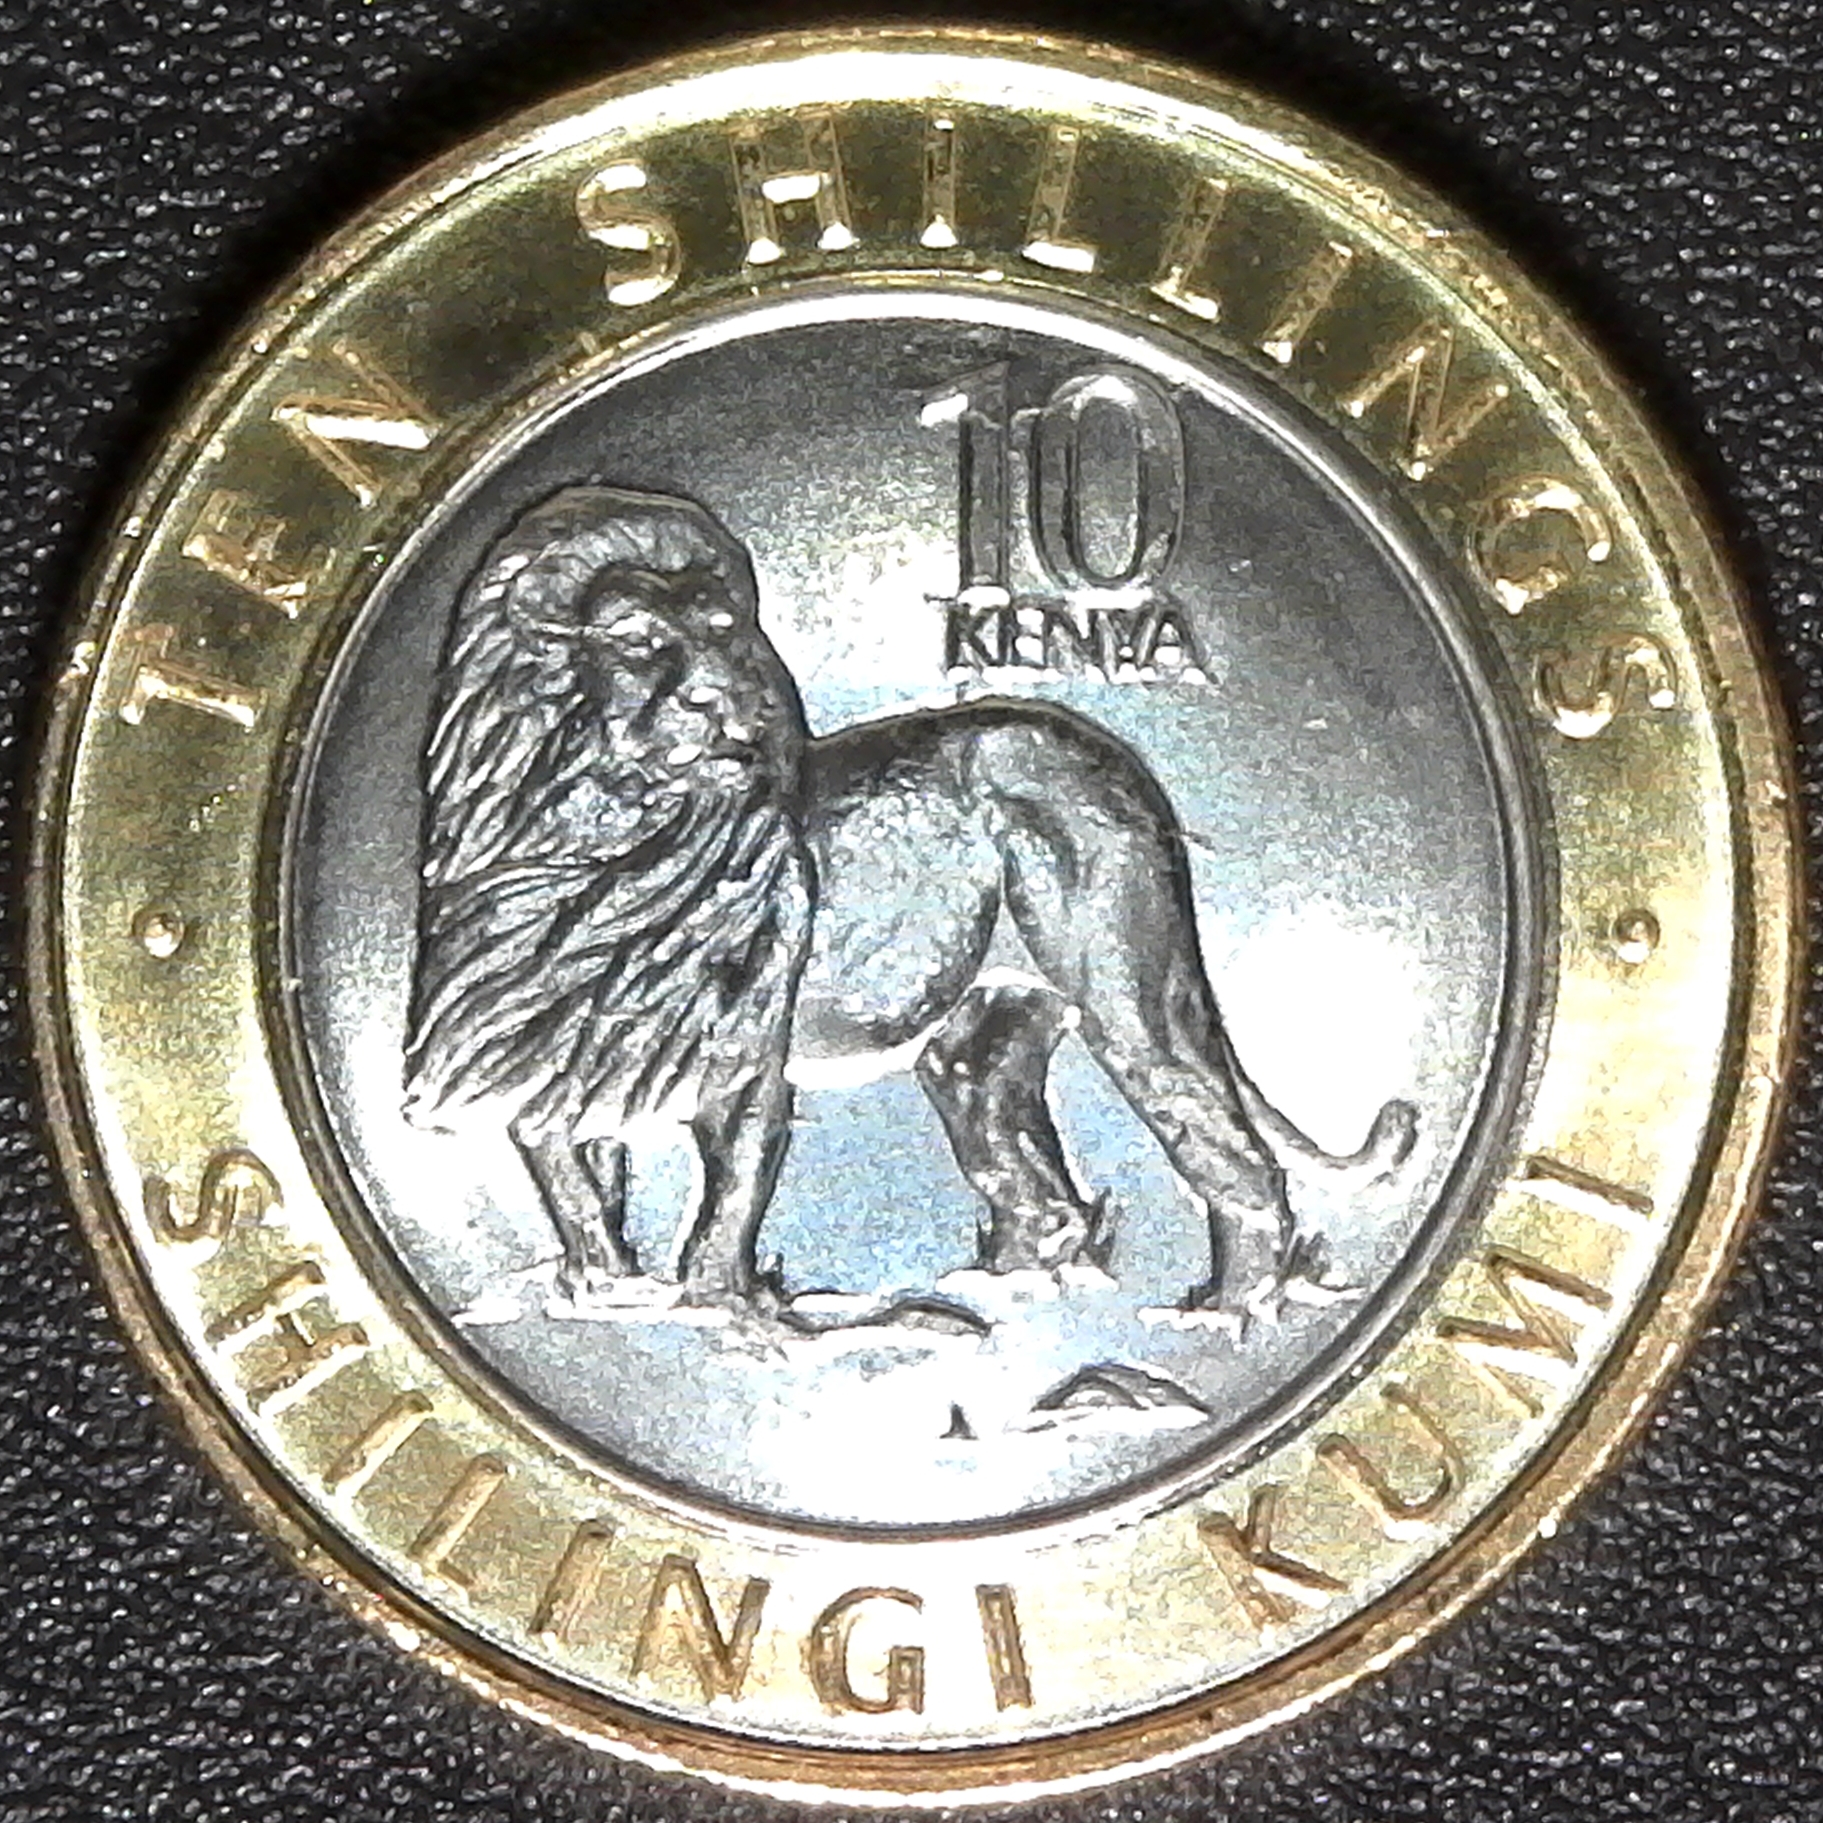 Kenya 10 shillings 2018 rev.jpg